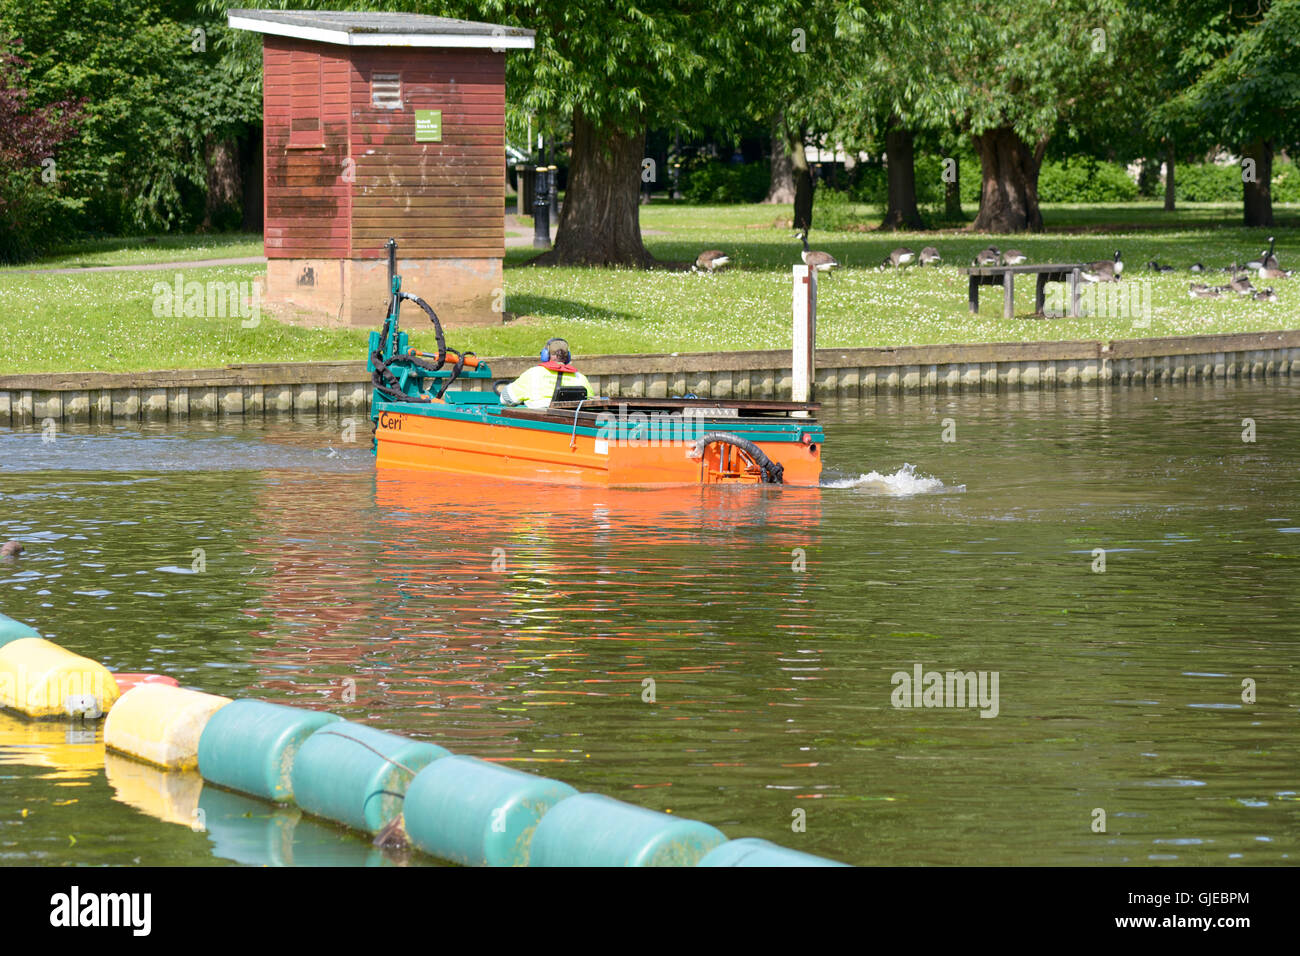 Mann Pilotierung Boot sammeln Unterwasser Unkraut am Fluss Ouse zu verhindern, dass jamming Boot Propeller in Bedford, Bedfordshire, England Stockfoto